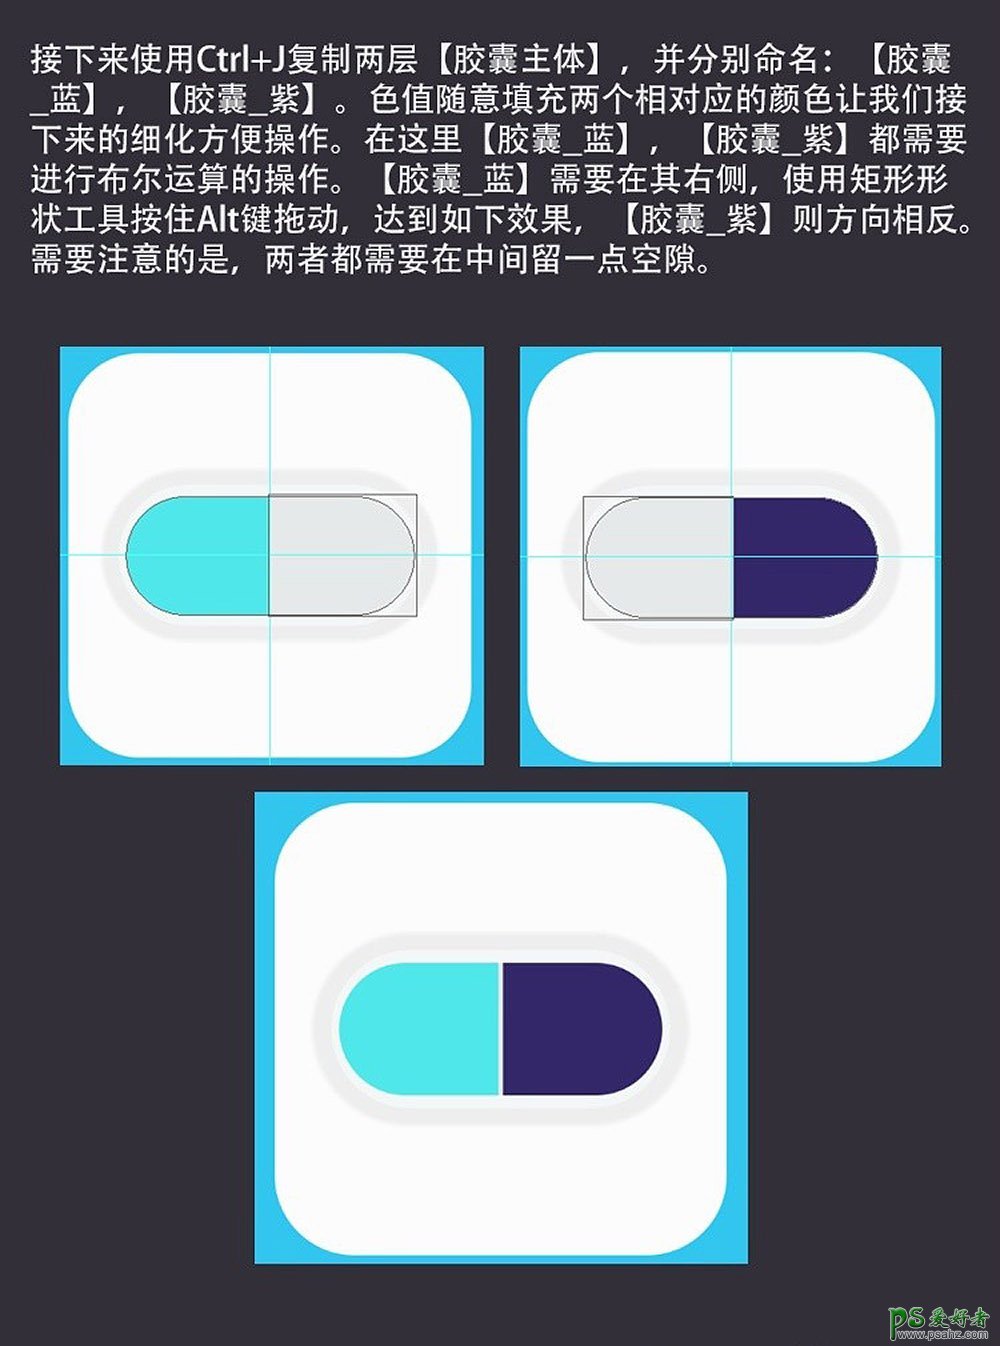 利用ps手工制作一个胶囊药物拟物图标,质感的胶囊icon图标。